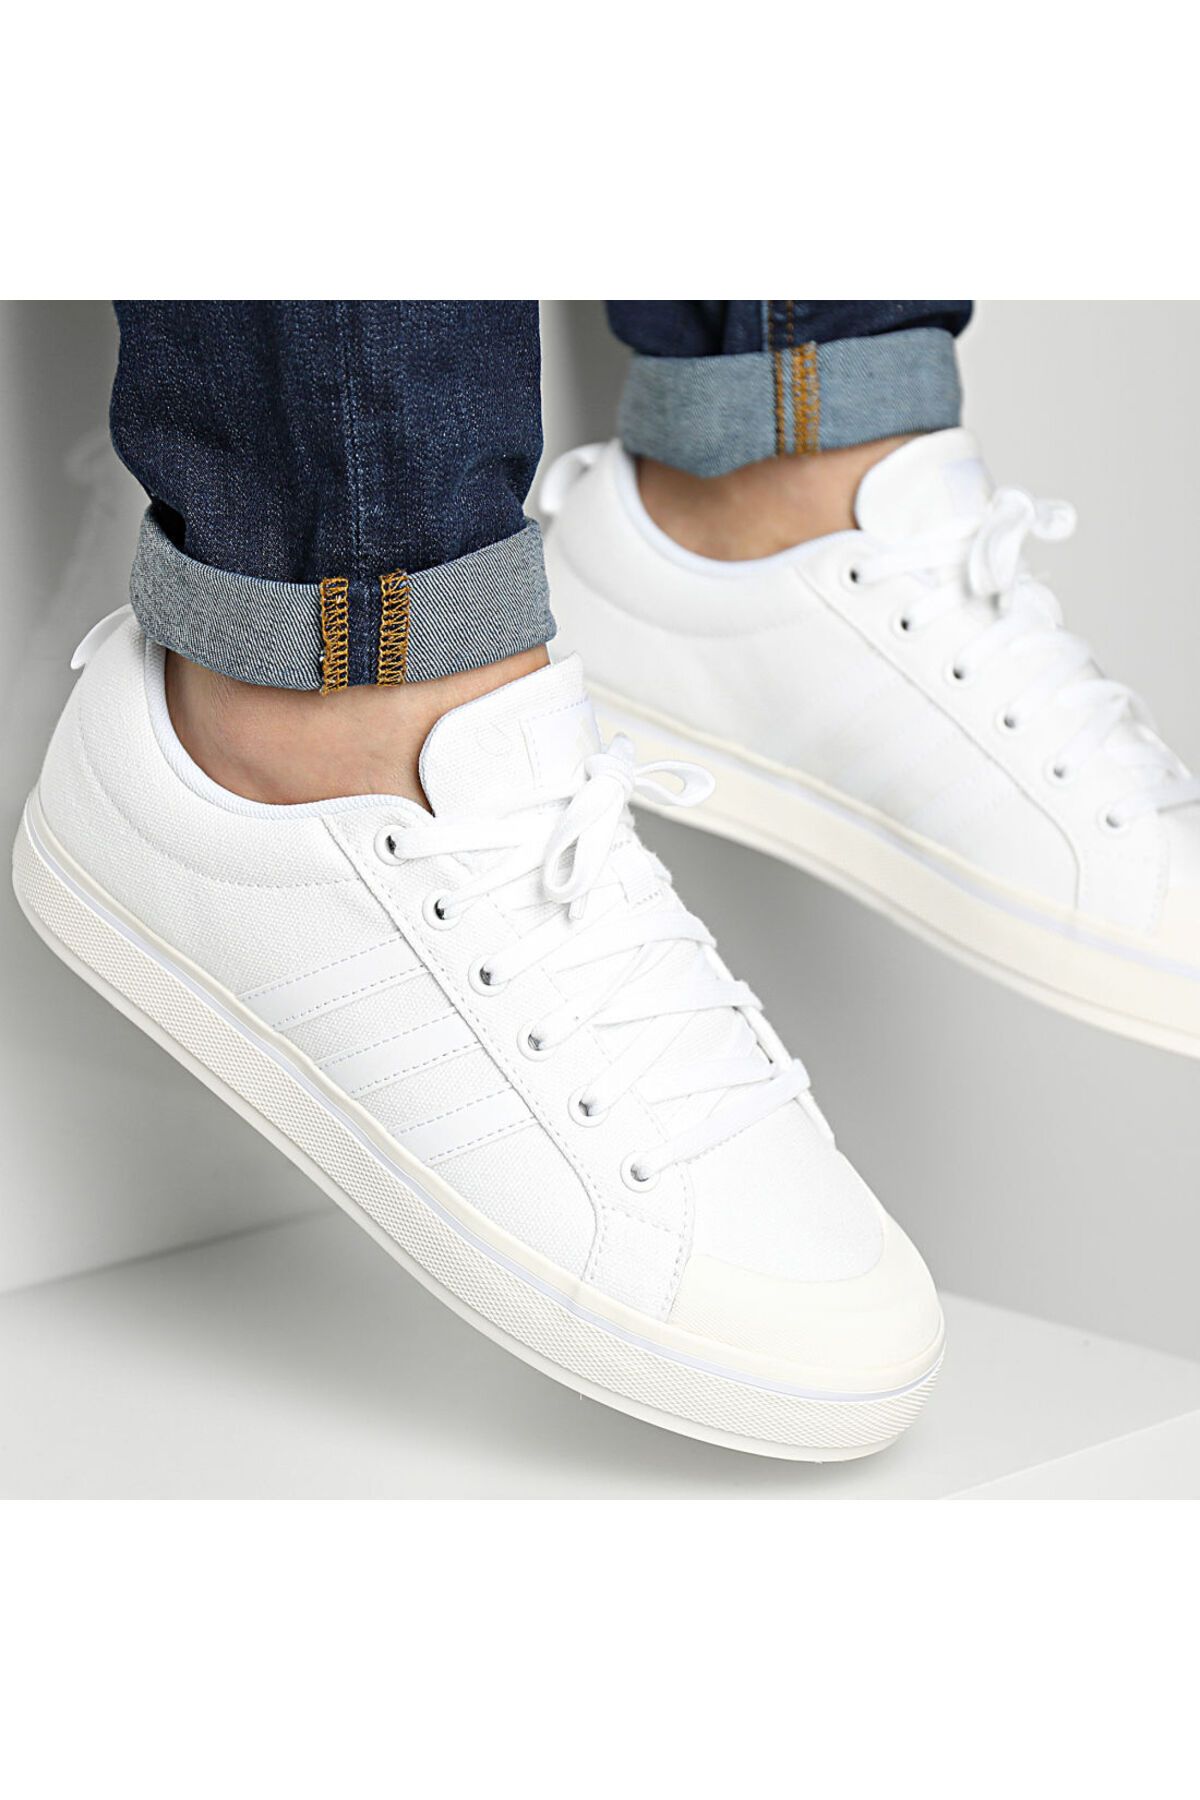 adidas Bravada 2.0 Erkek Günlük Ayakkabı HP6021 Beyaz